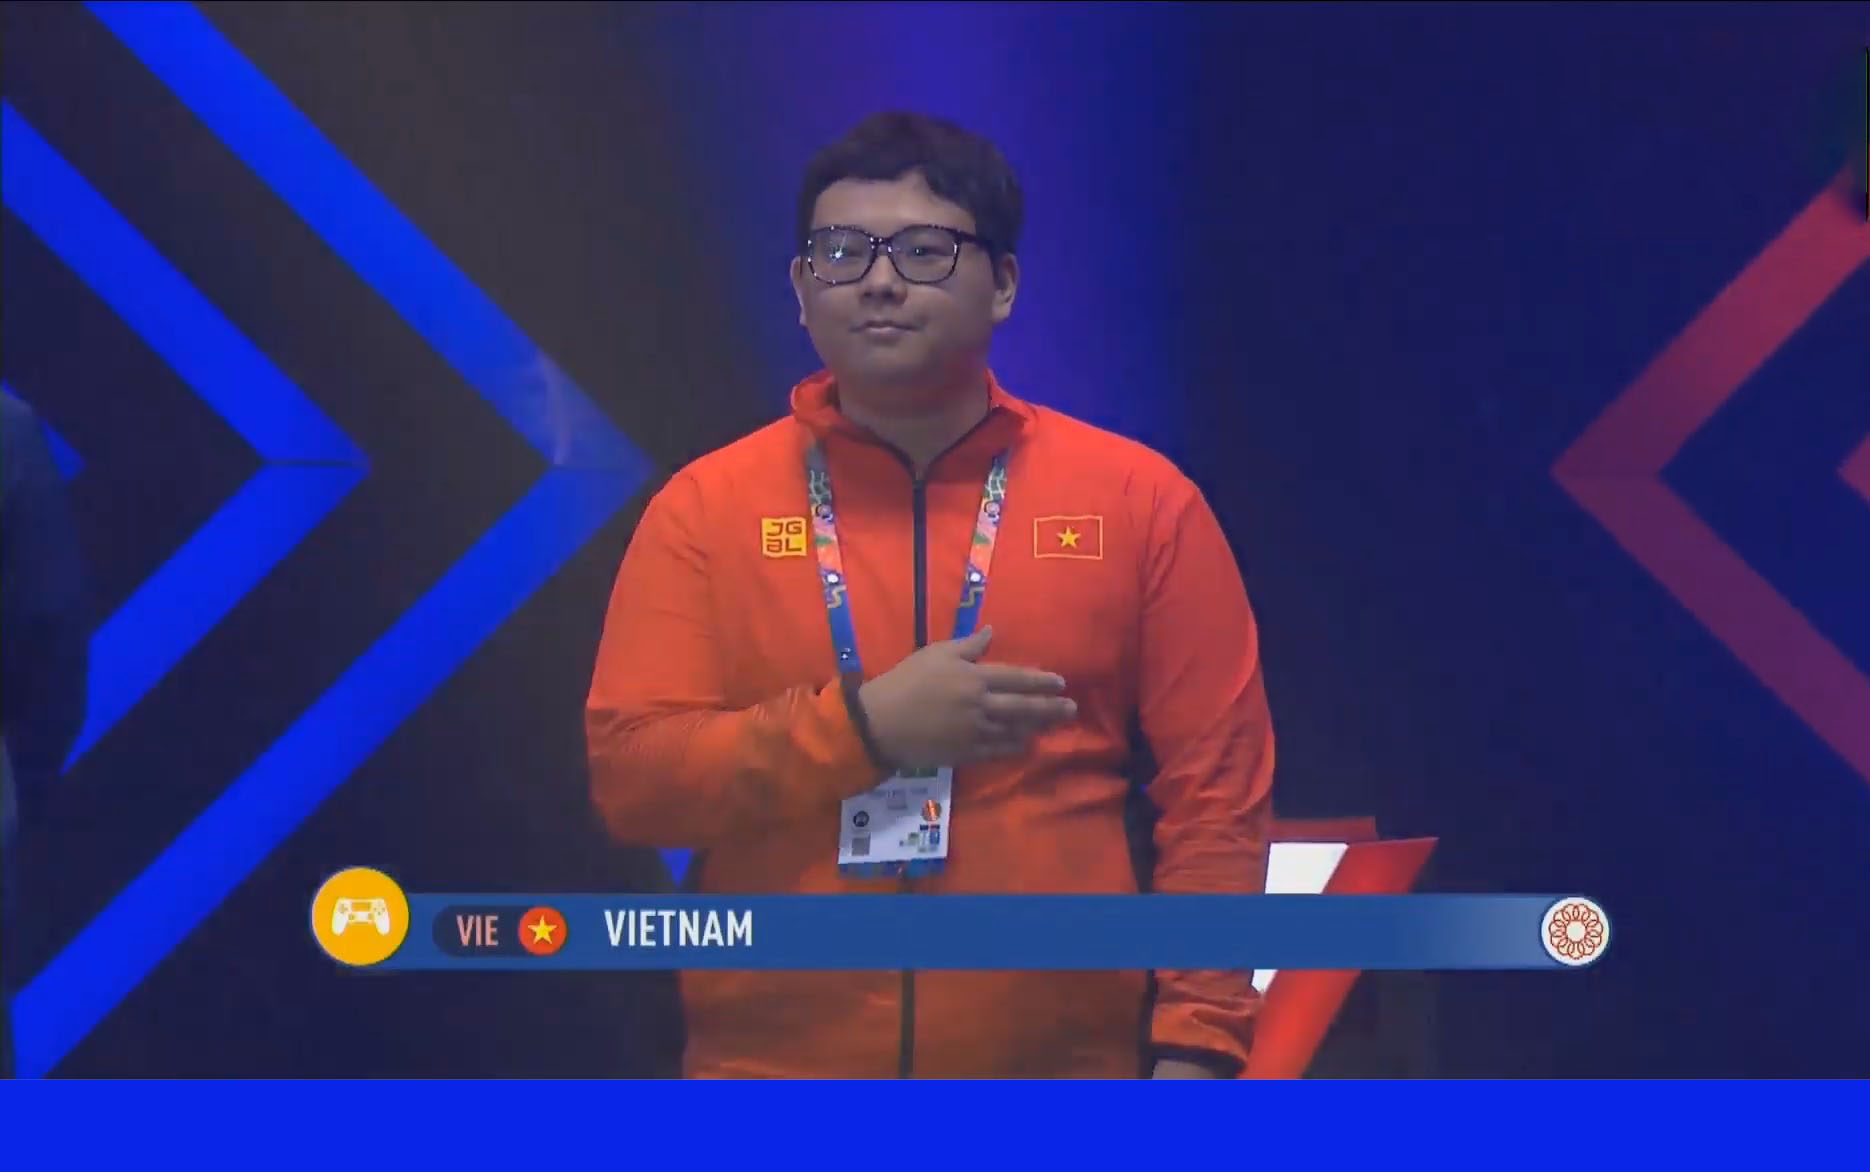 Đoàn eSports Việt gần như chắc chắn sẽ có huy chương sau ngày thi đấu đầu tiên tại SEA Games 30 - Ảnh 1.